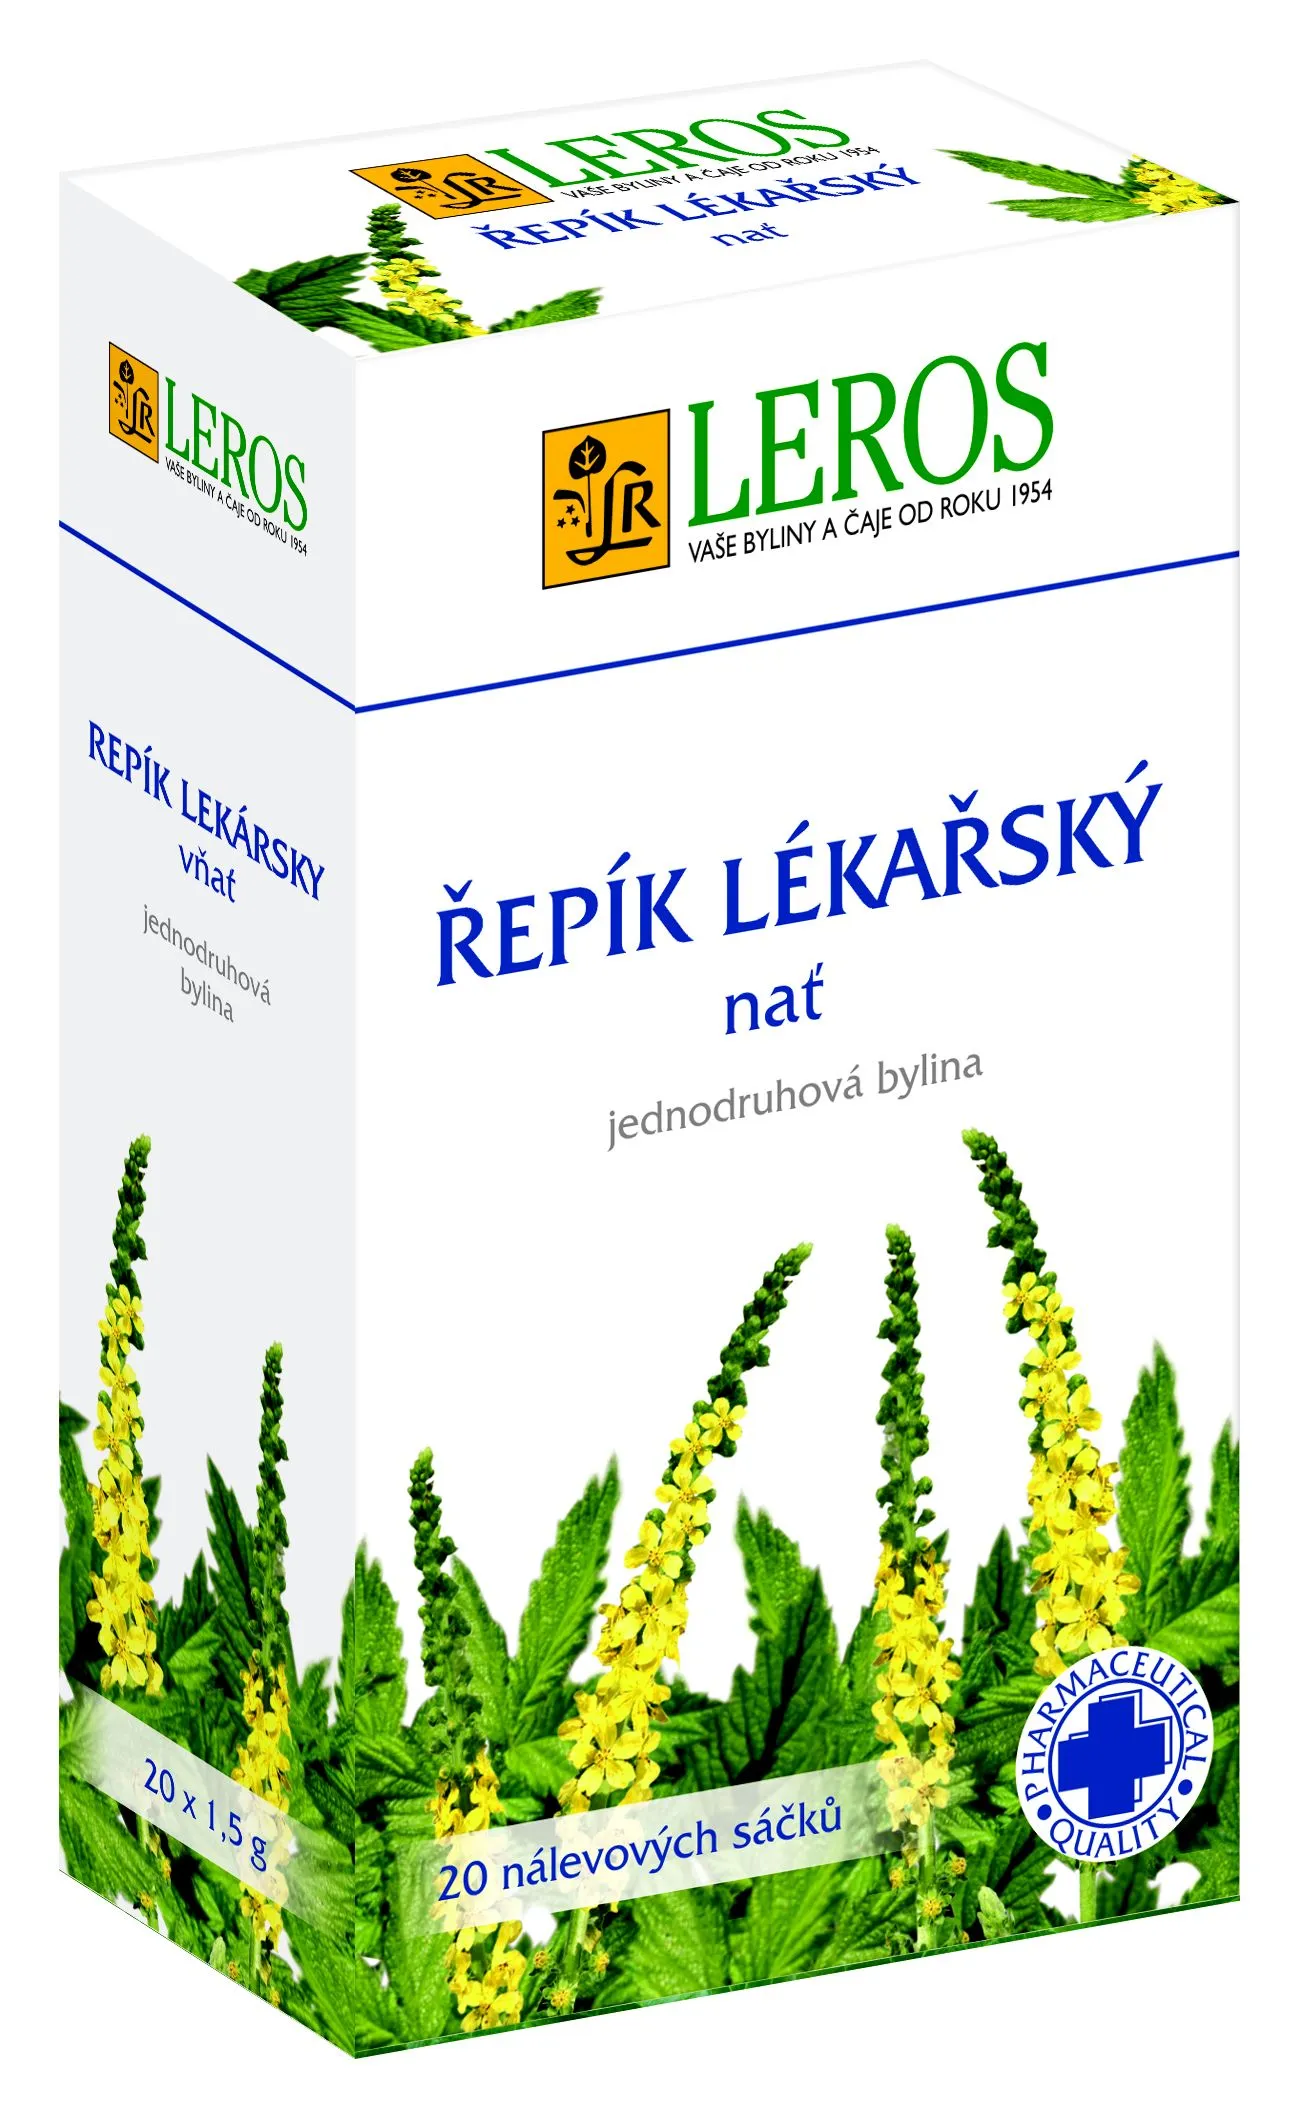 Leros Řepík lékářský - nať porcovaný čaj 20x1,5 g